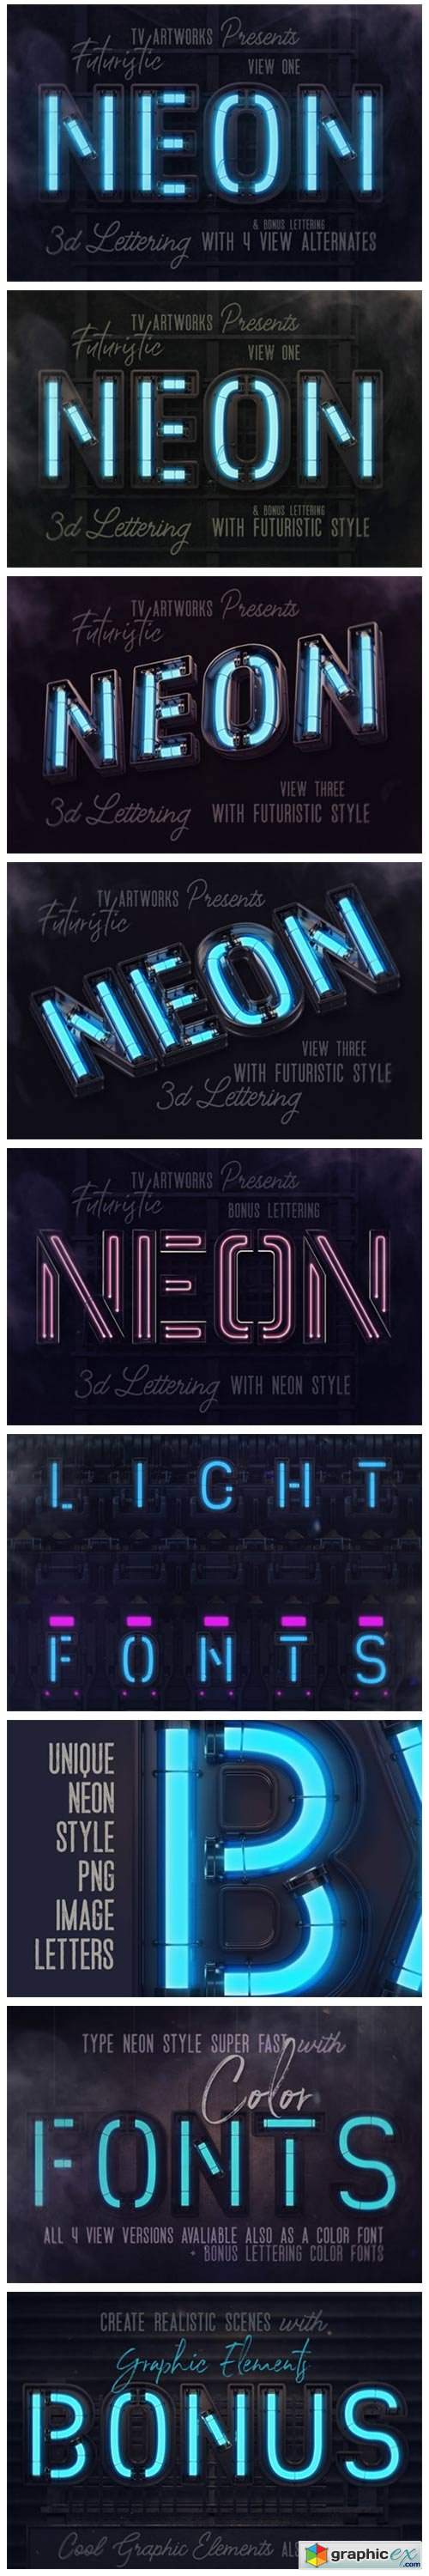  Futuristic Neon 3D Lettering 